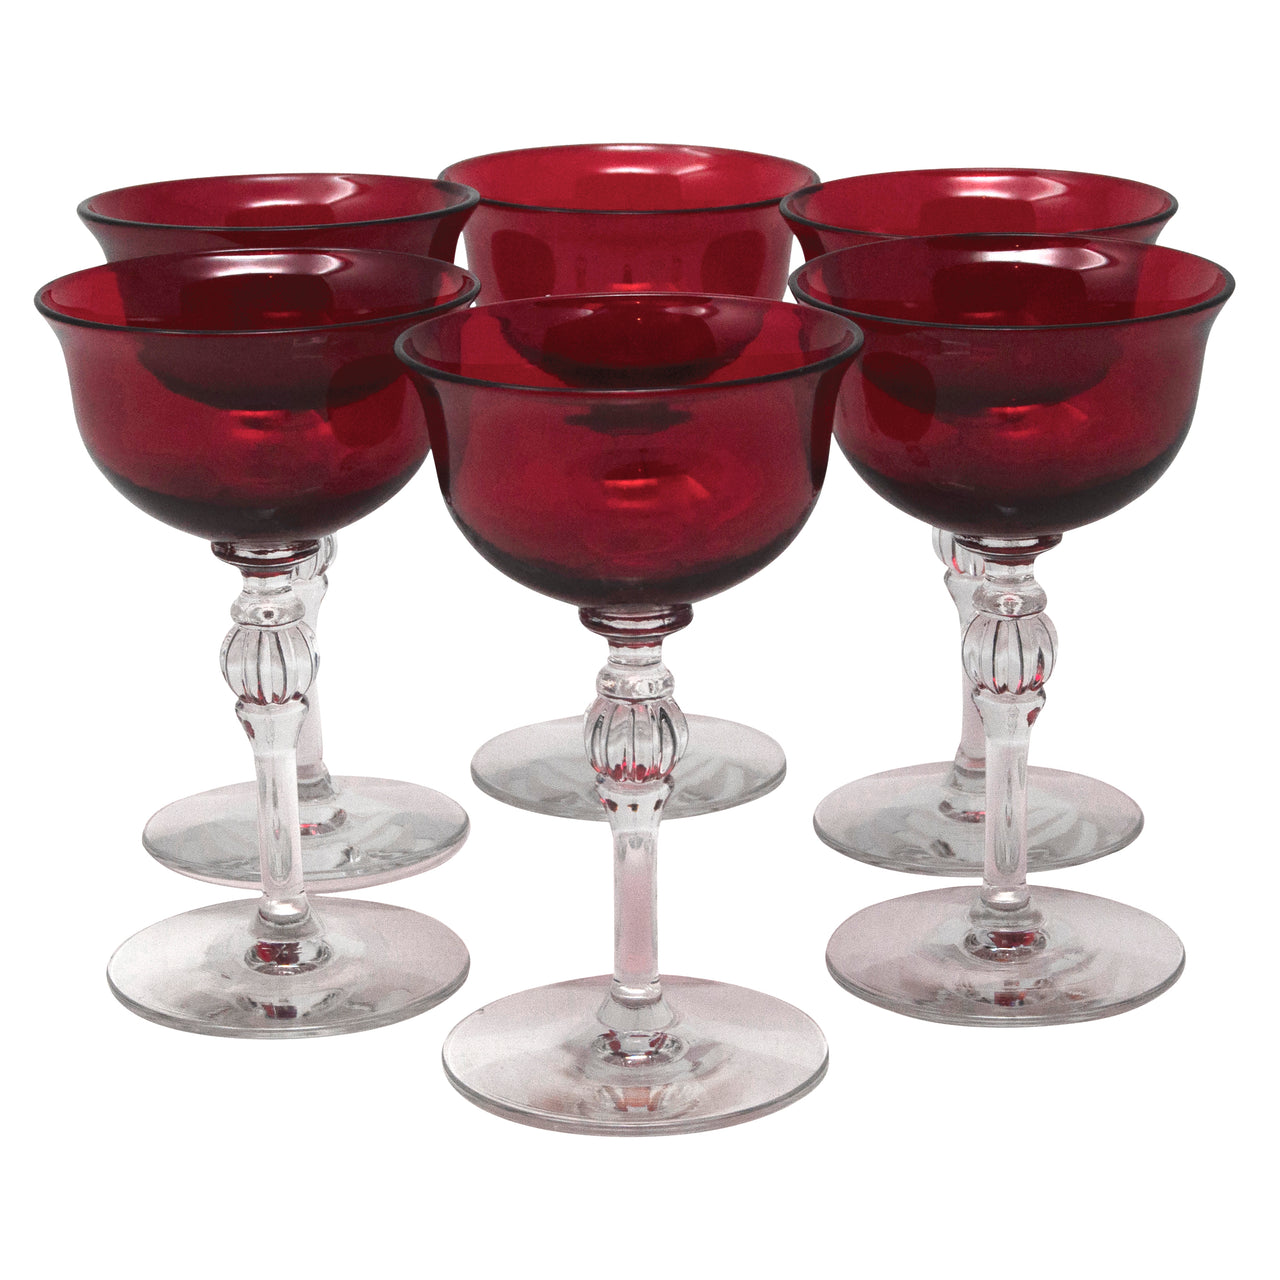 6 Vintage Etched Red Cocktail Glasses, 1950's, Vintage 4 oz Small Cocktail  - Martini Glasses, Craft Cocktail glasses